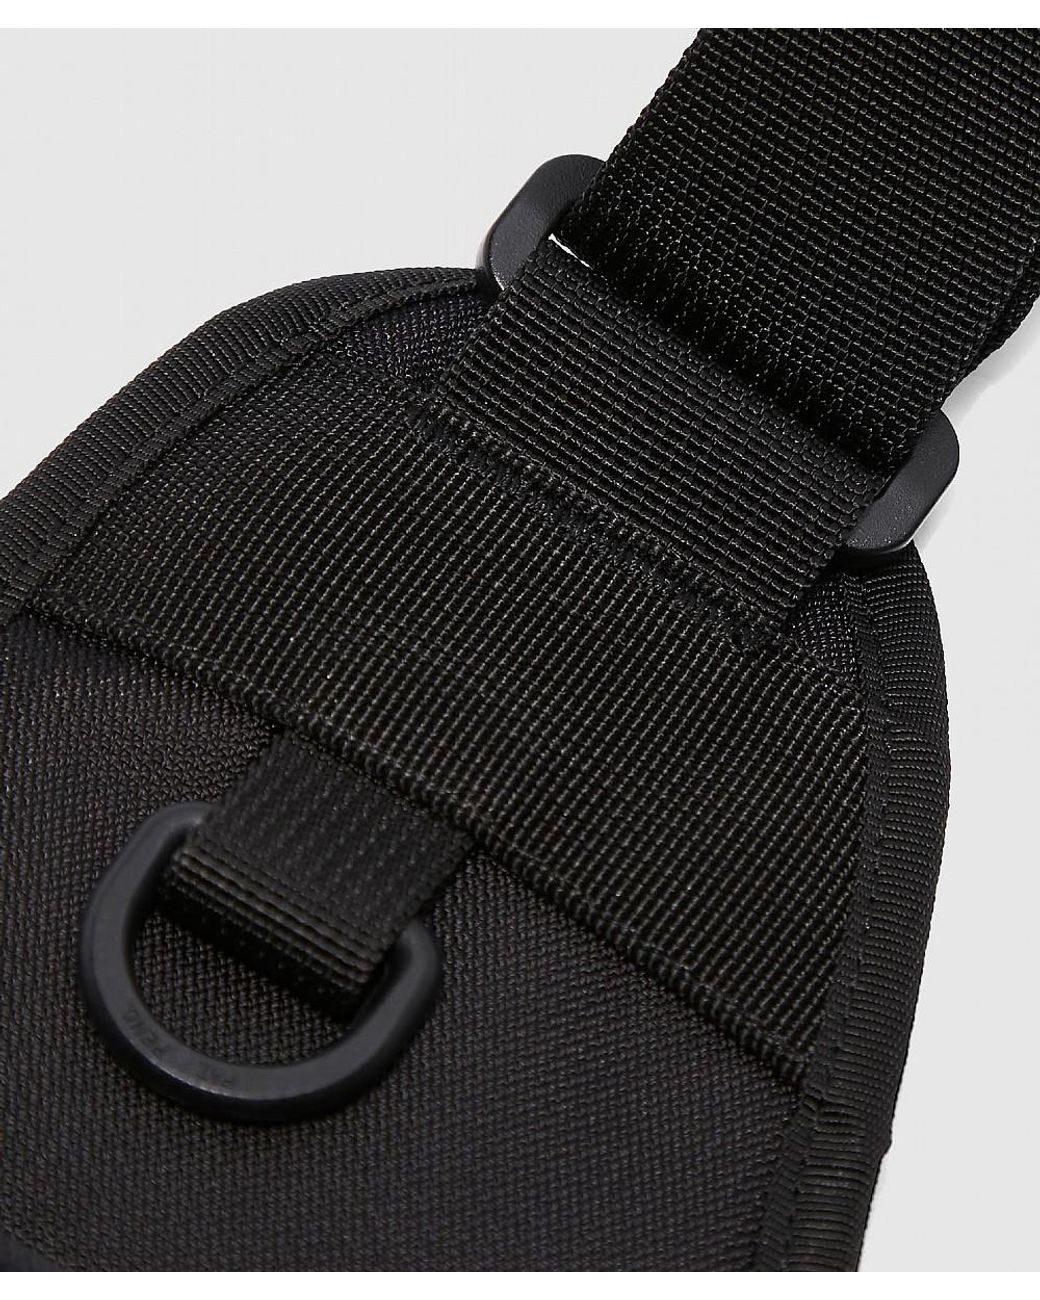 Carhartt WIP Delta Shoulder Bag in Black for Men